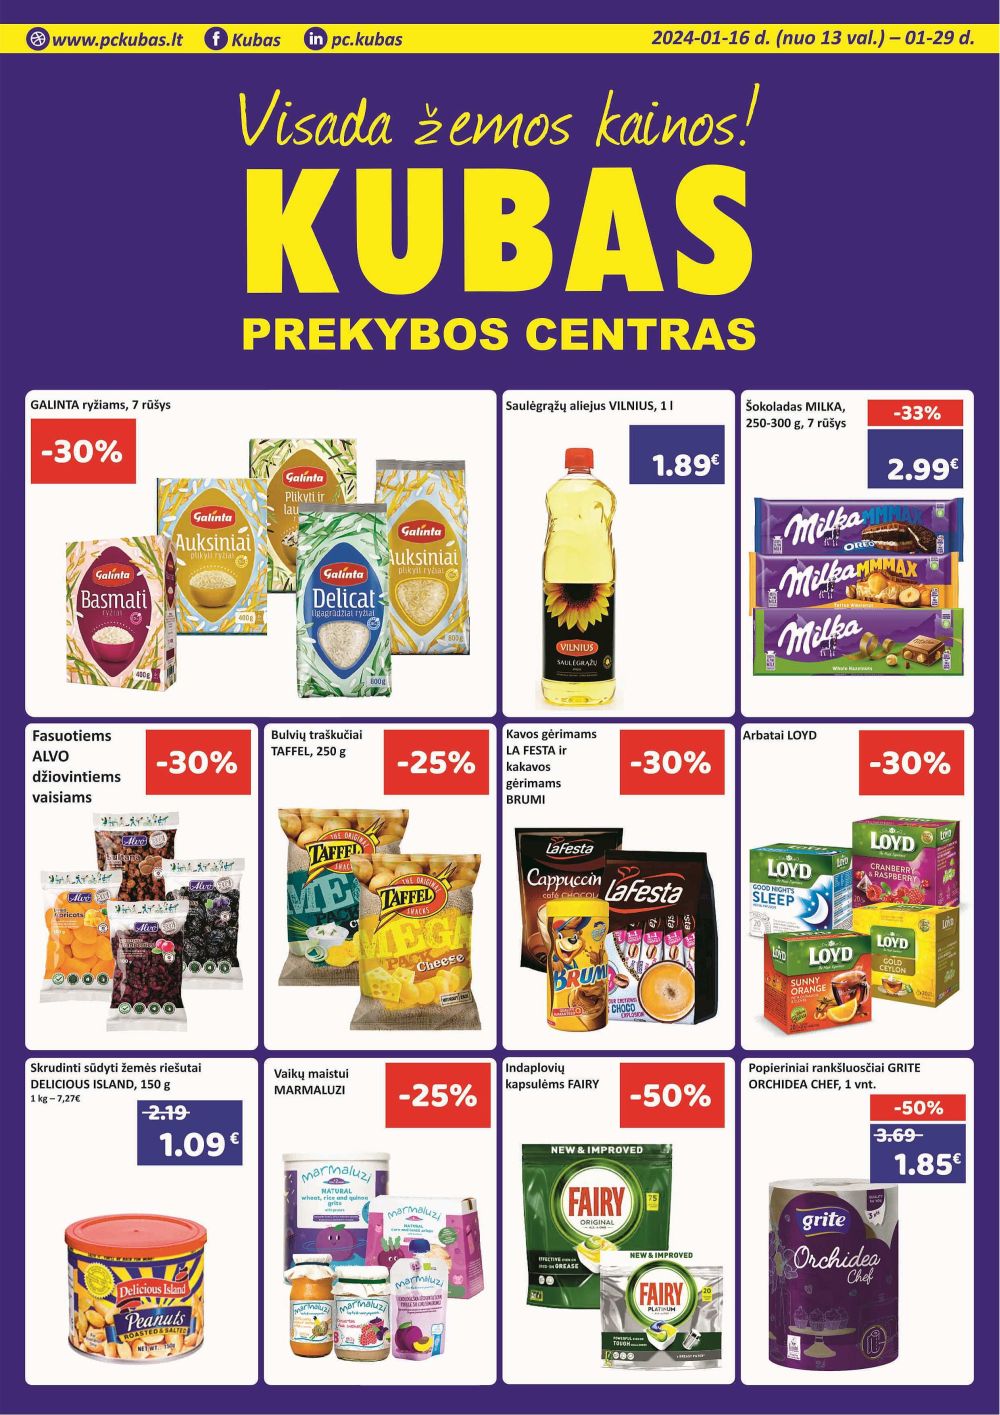 kubas - KUBAS (2024 01 16 - 2024 01 29) - page: 1